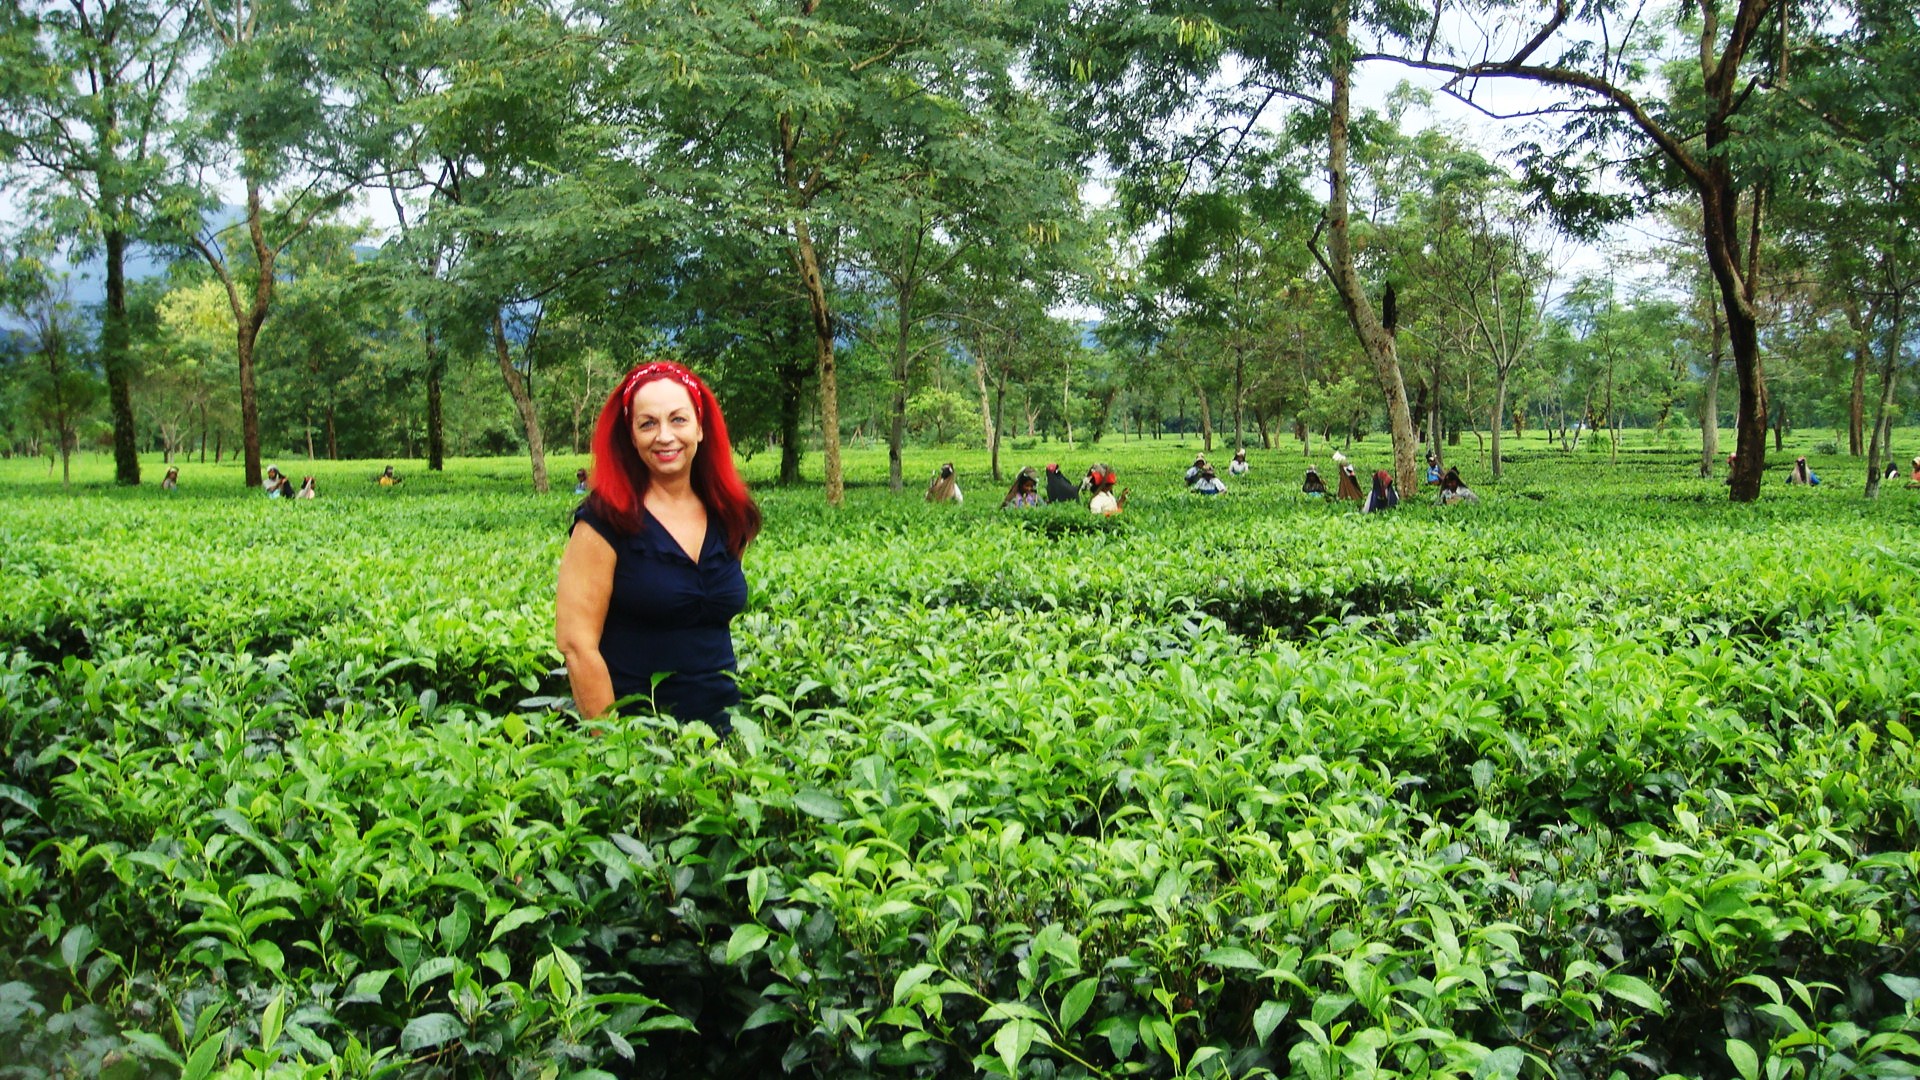 Dharlene In Tea Field - Assam Tea Garden Hd , HD Wallpaper & Backgrounds